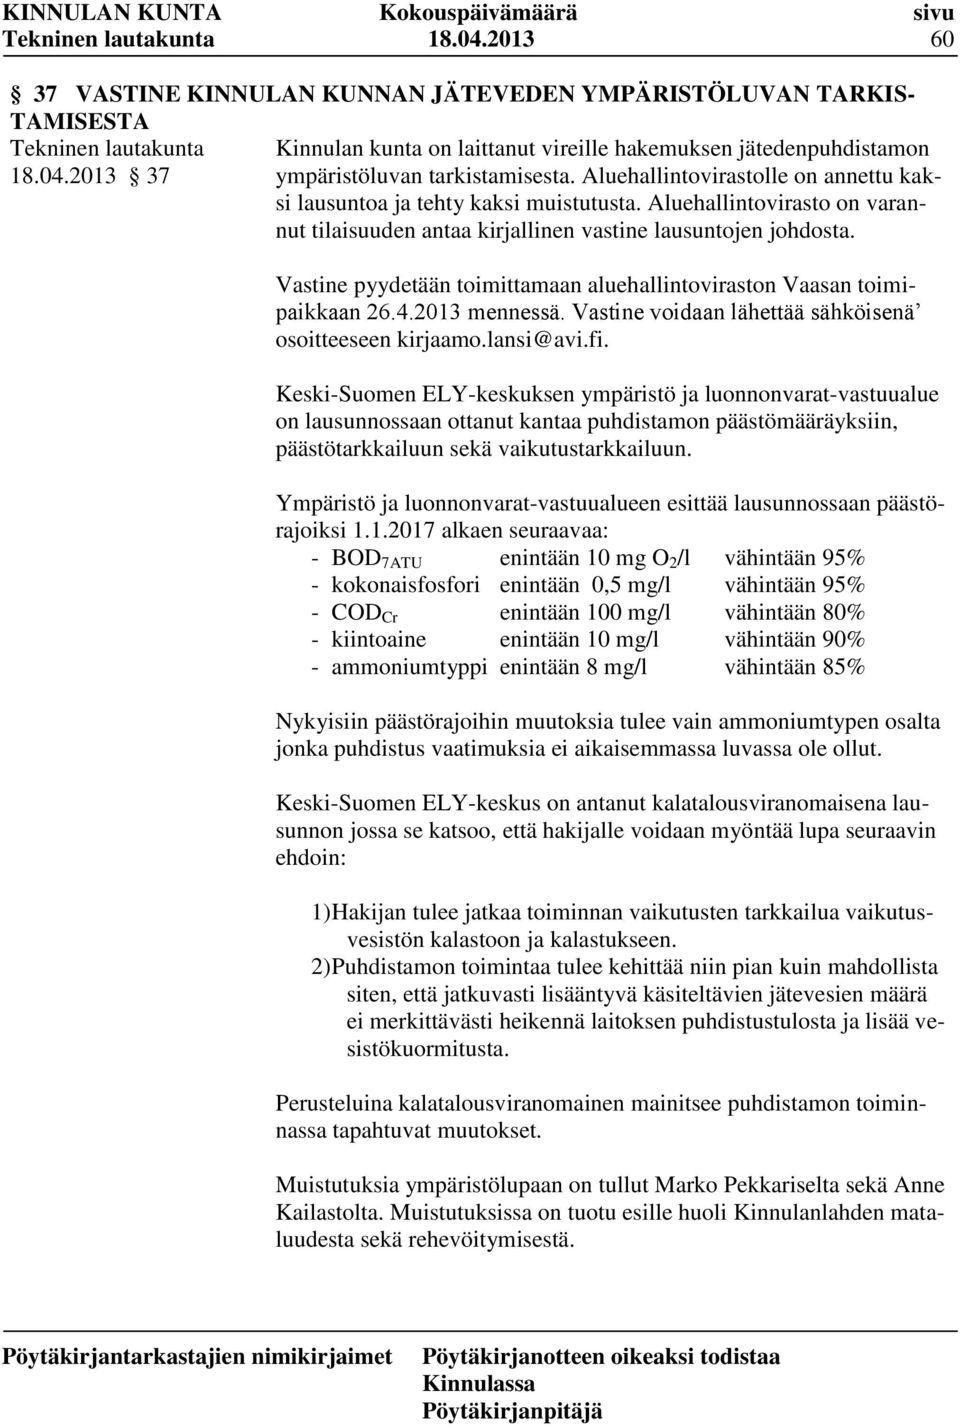 Vastine pyydetään toimittamaan aluehallintoviraston Vaasan toimipaikkaan 26.4.2013 mennessä. Vastine voidaan lähettää sähköisenä osoitteeseen kirjaamo.lansi@avi.fi.